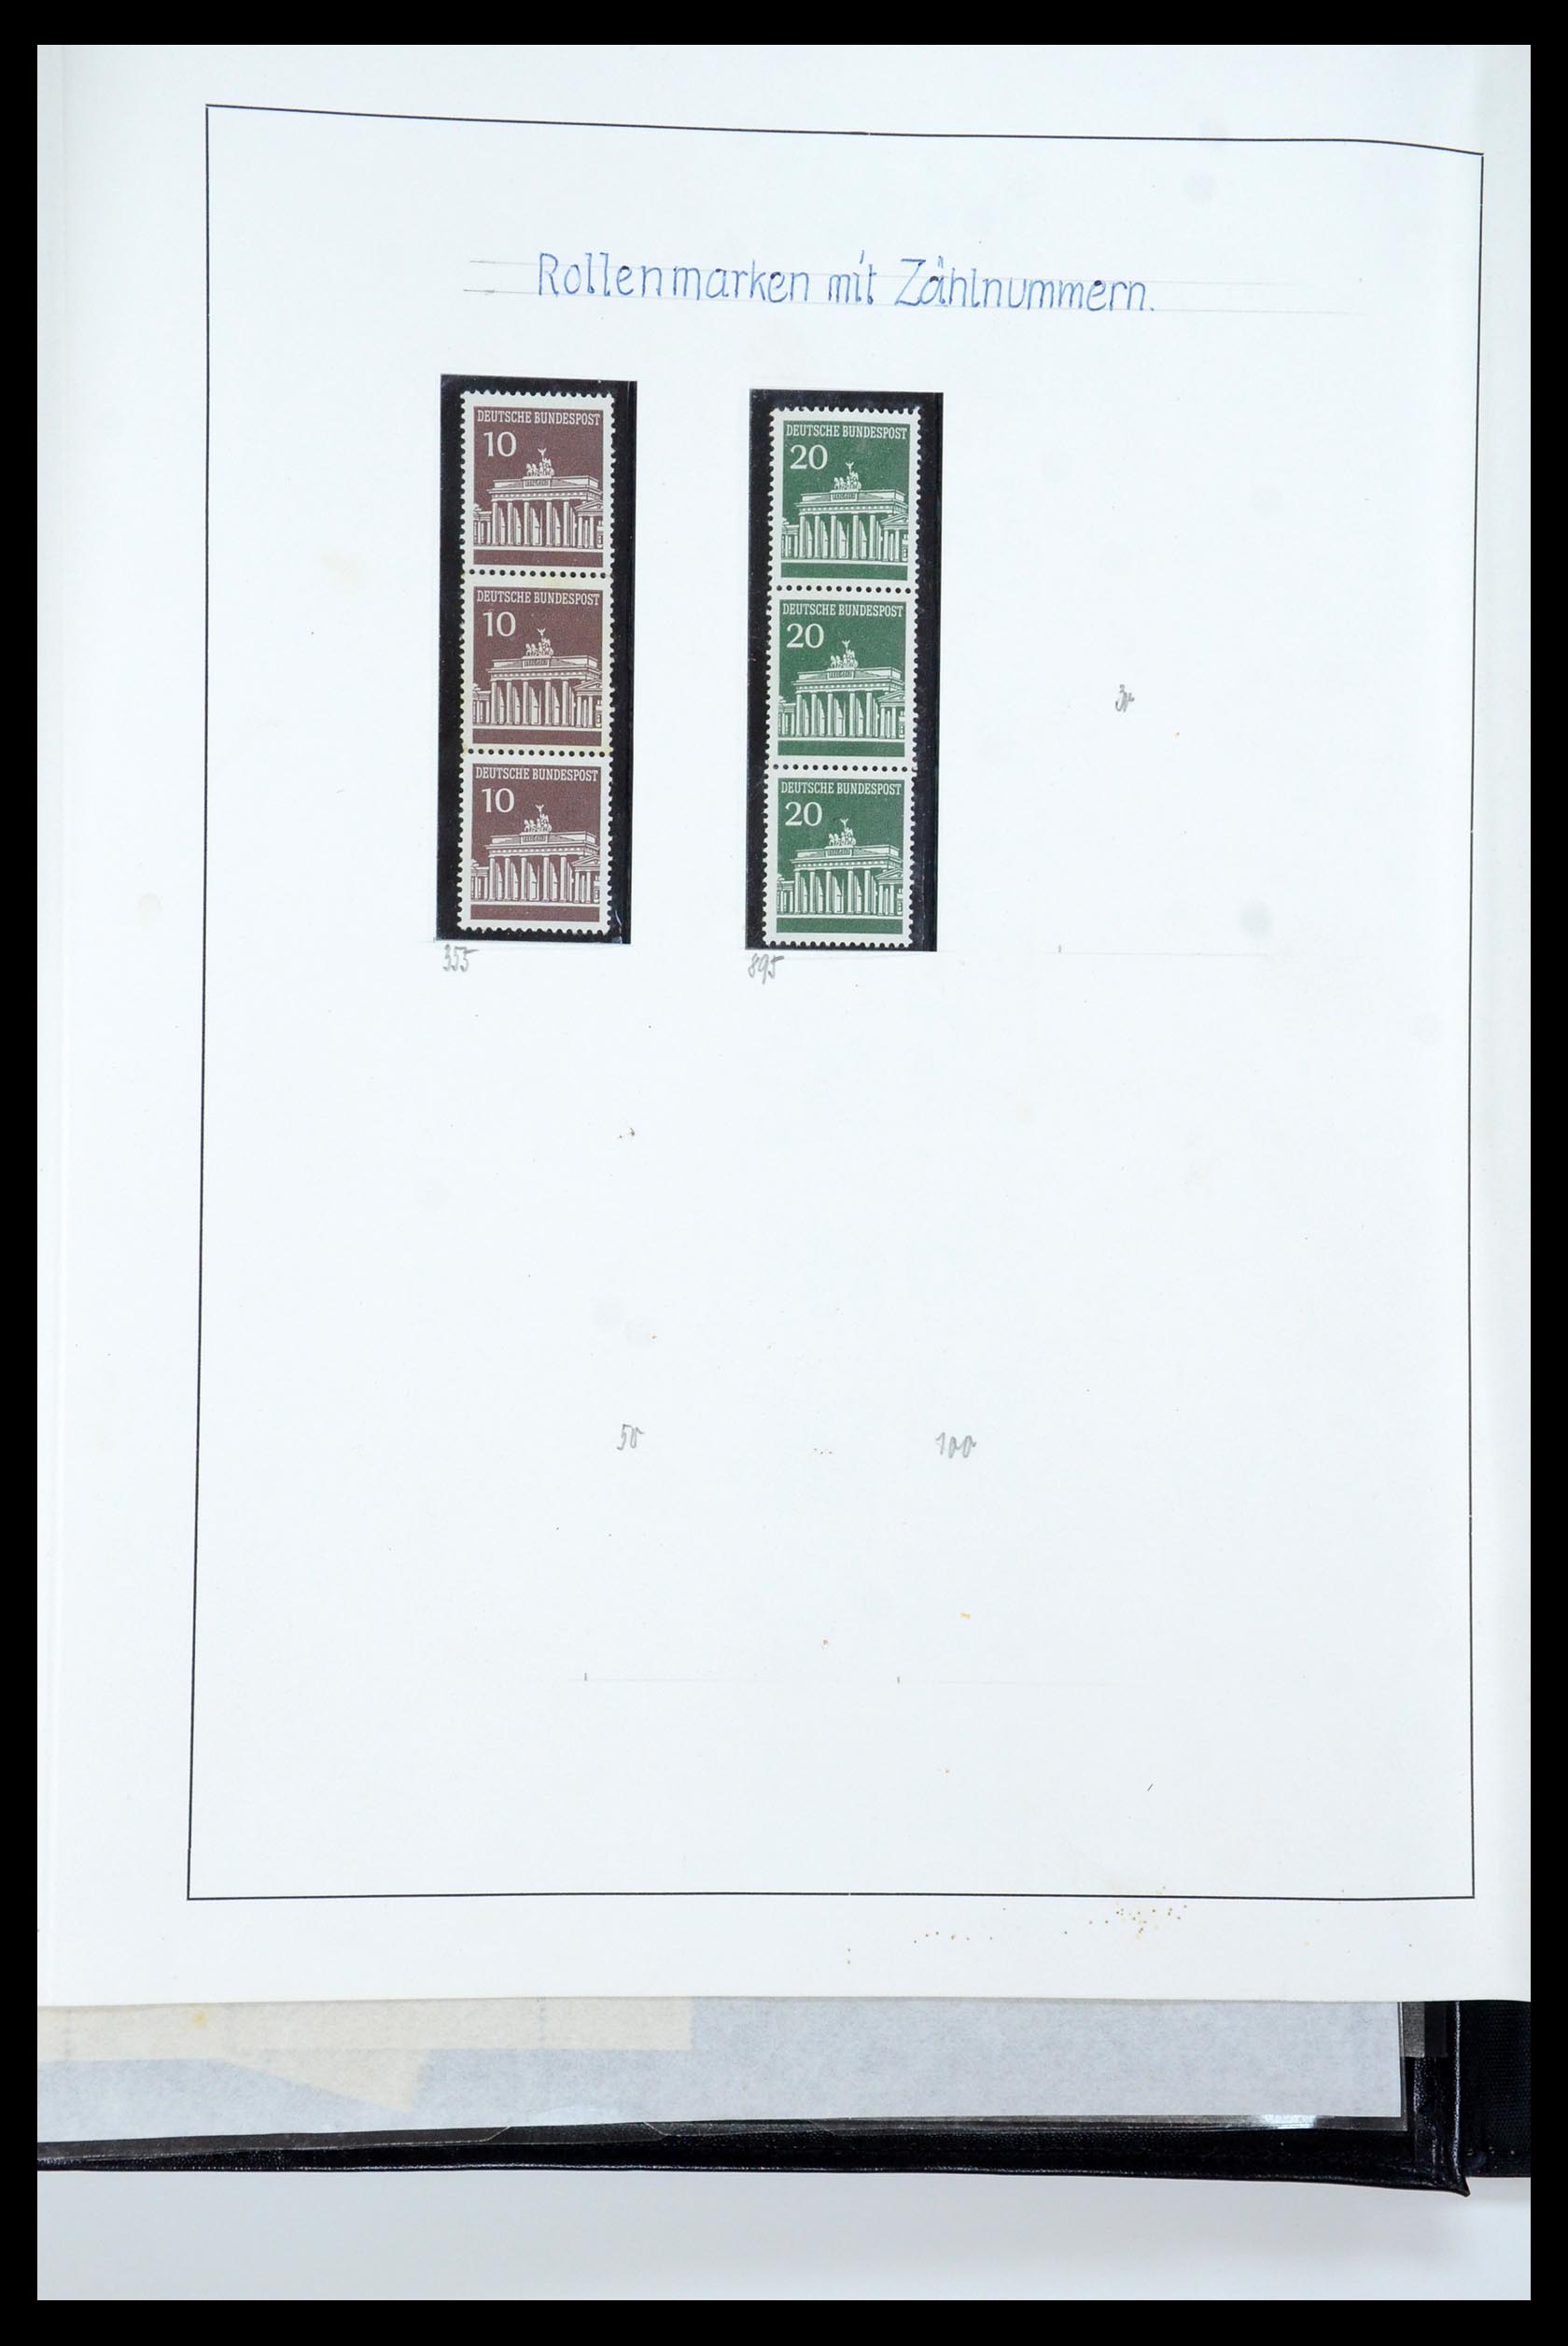 35729 059 - Postzegelverzameling 35729 Duitsland combinaties 1920-1980.